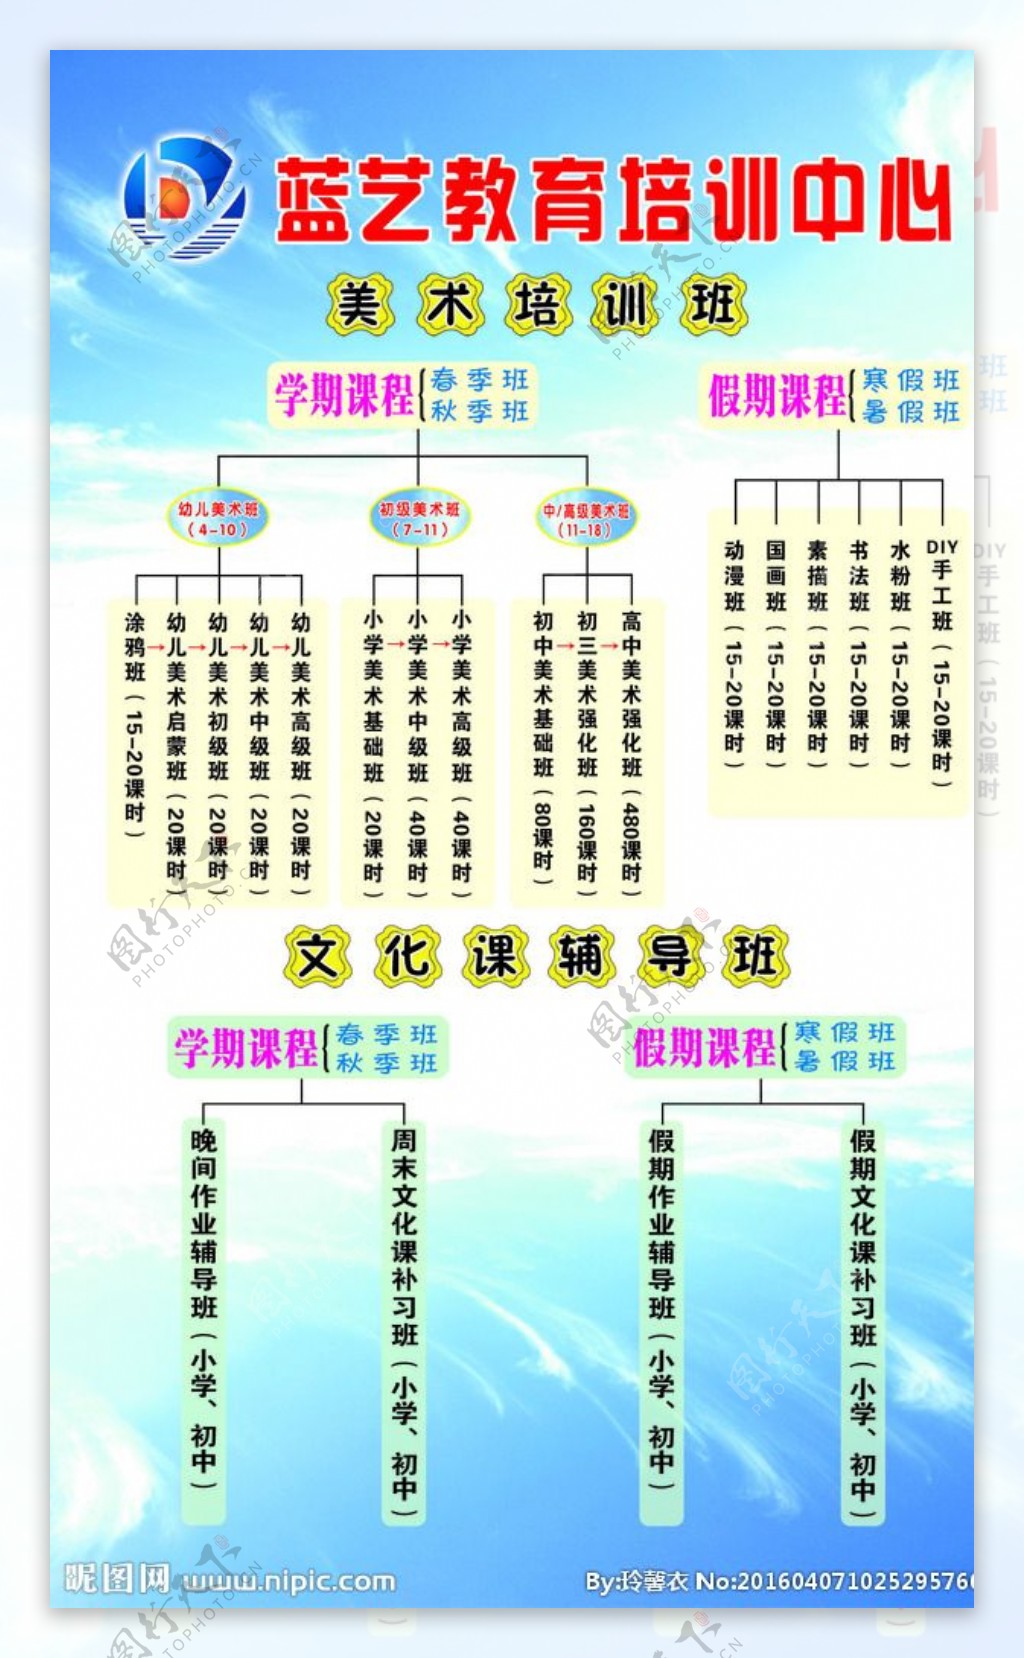 蓝艺培训中心课程浏览表